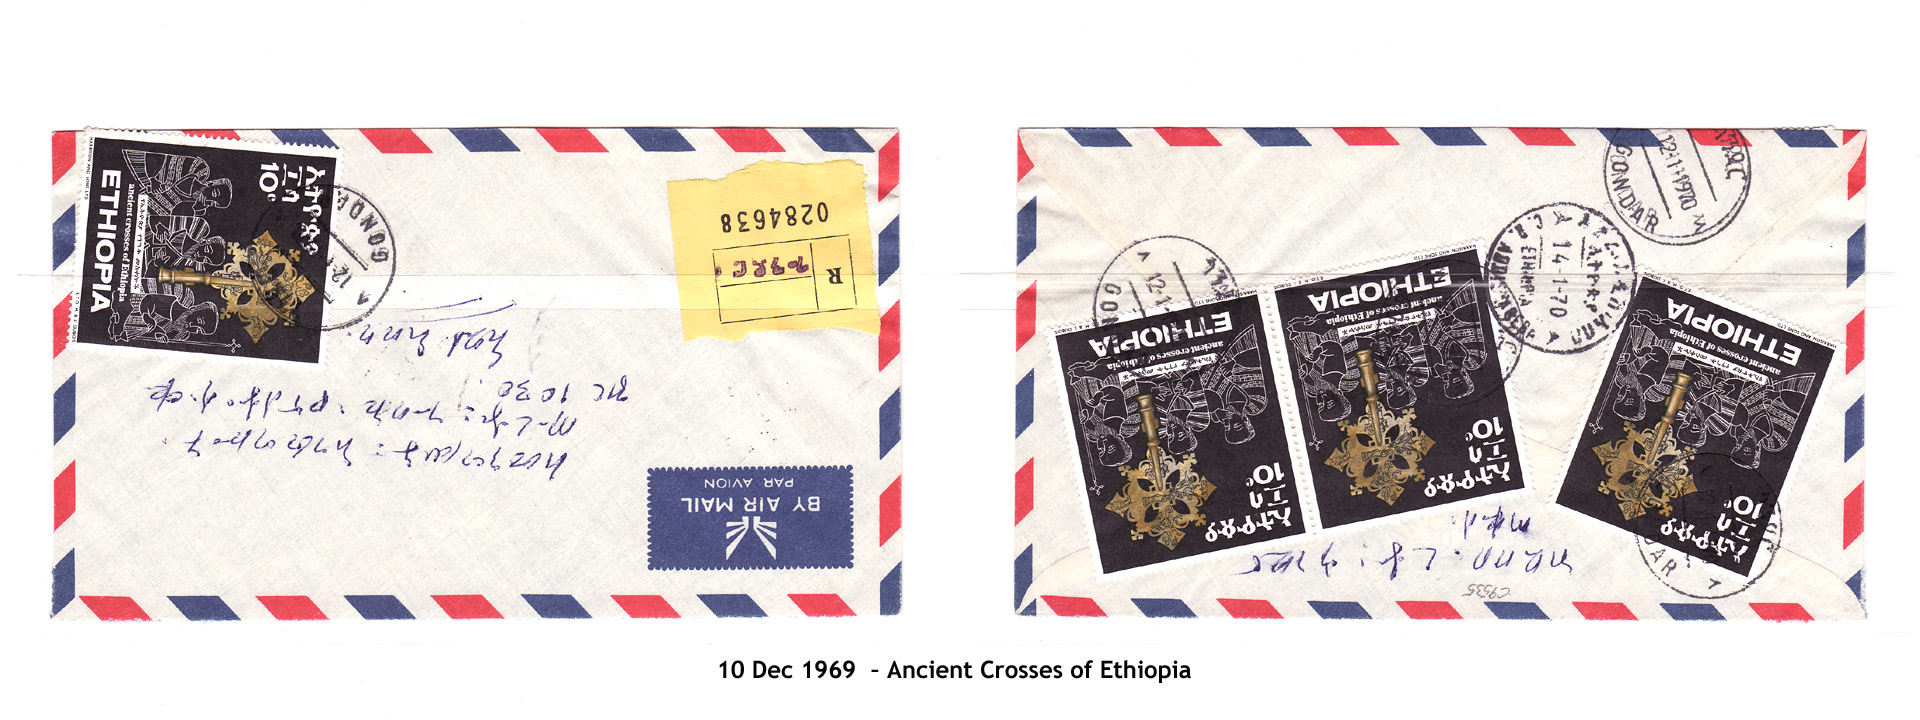 19691210 – Ancient Crosses of Ethiopia